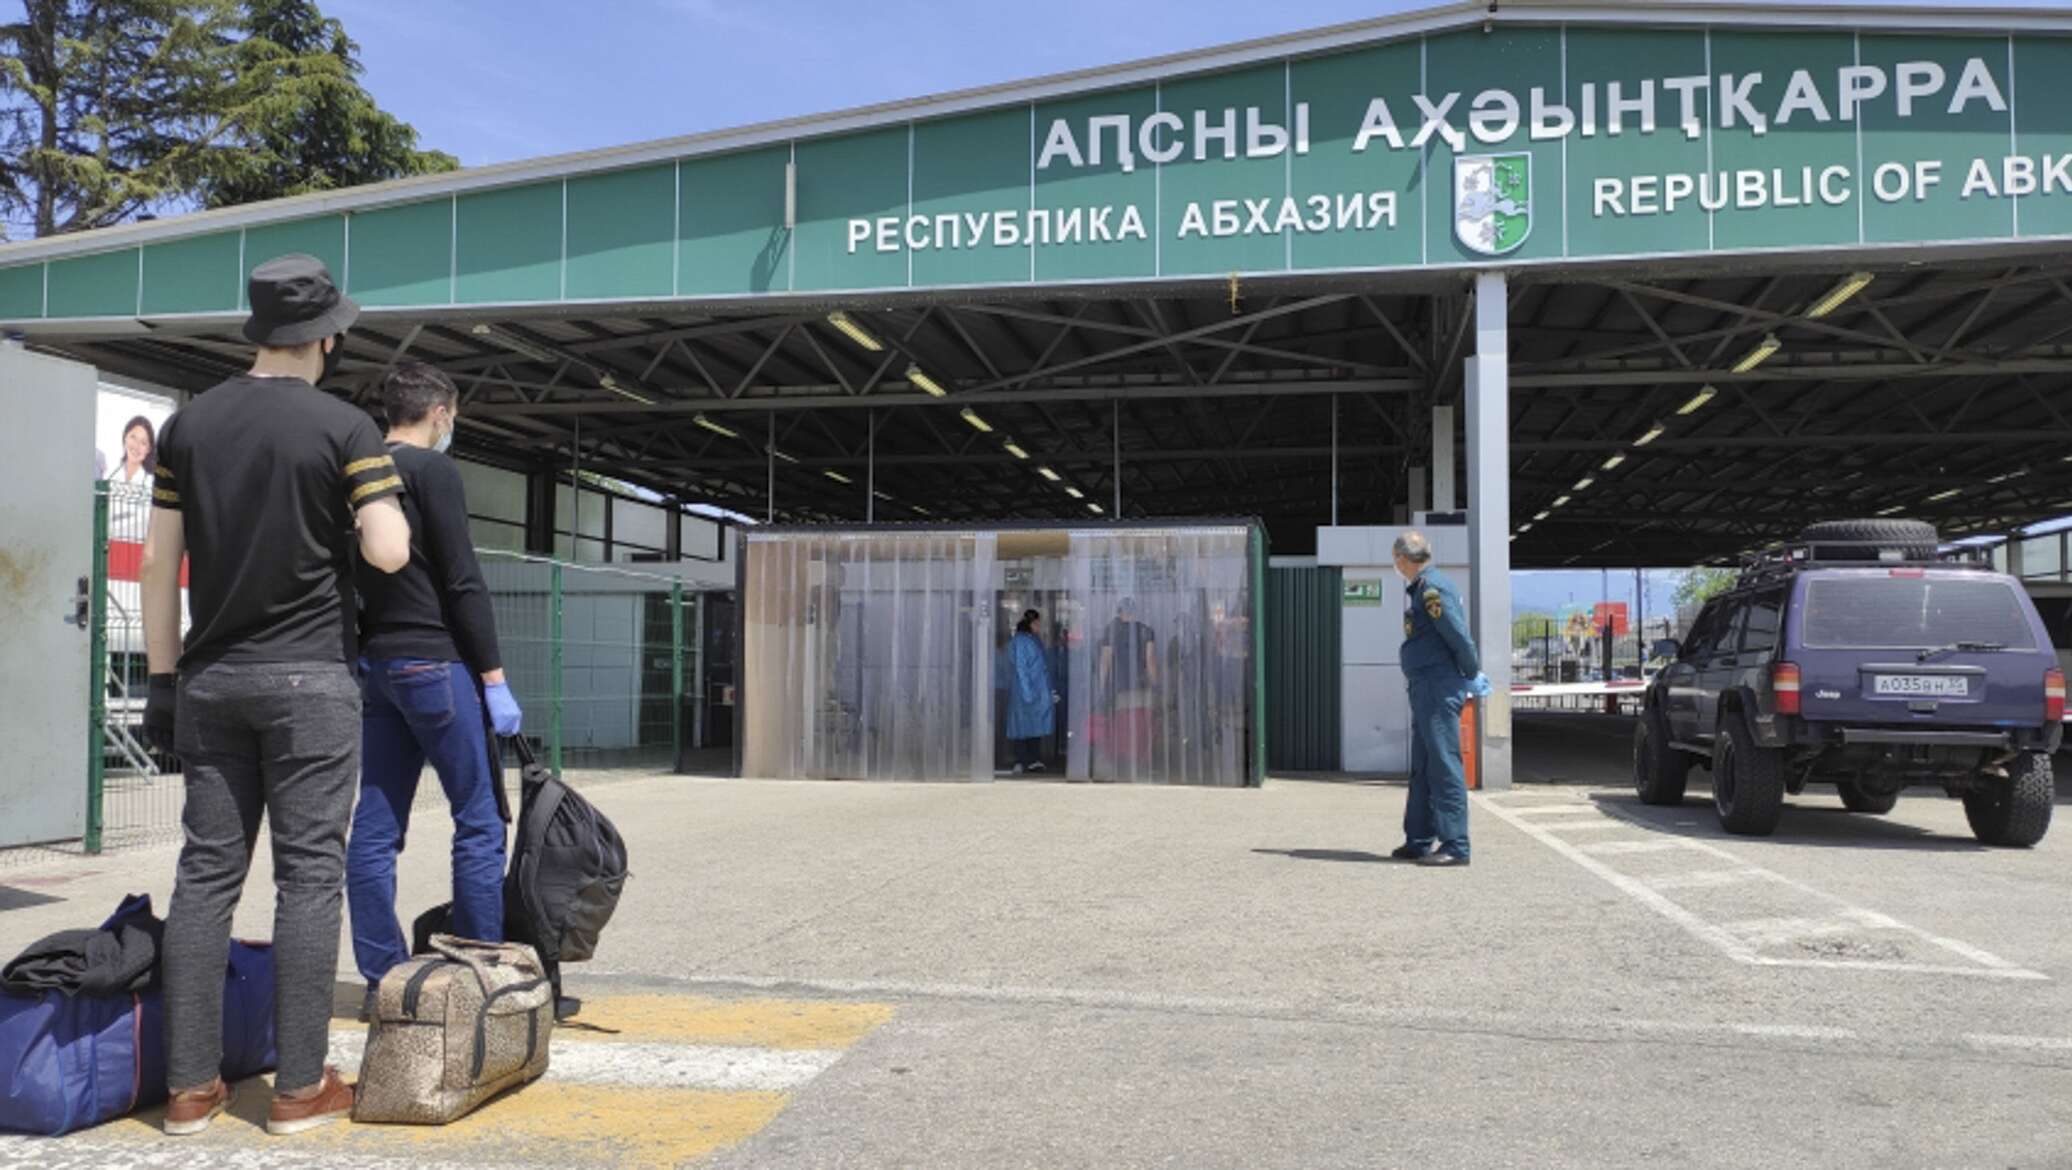 Абхазия граница дети документы. Российско-Абхазская граница. Очередь на границе с Абхазией. Абхазия границы. Пограничный контроль Абхазия.